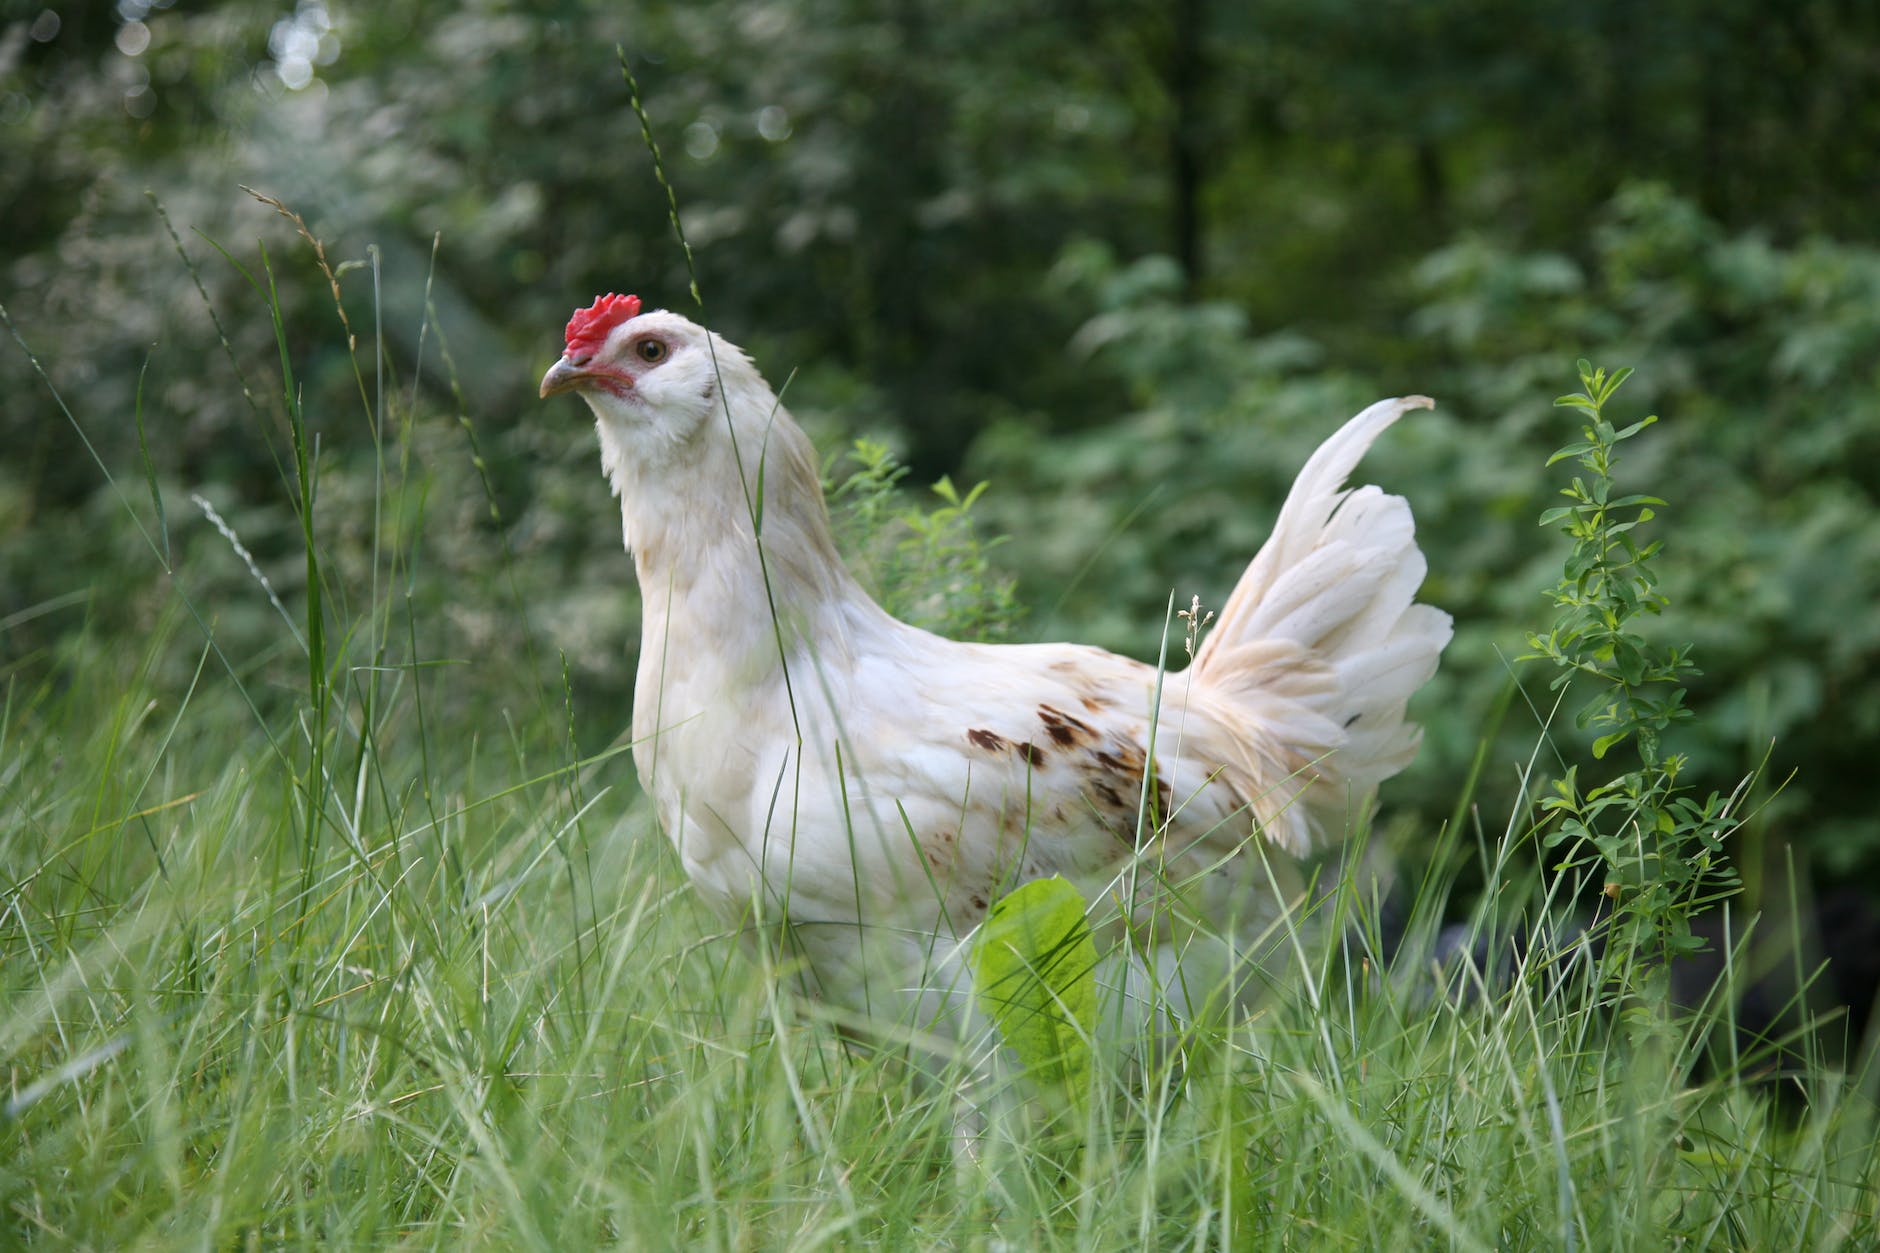 white chicken on green grass field